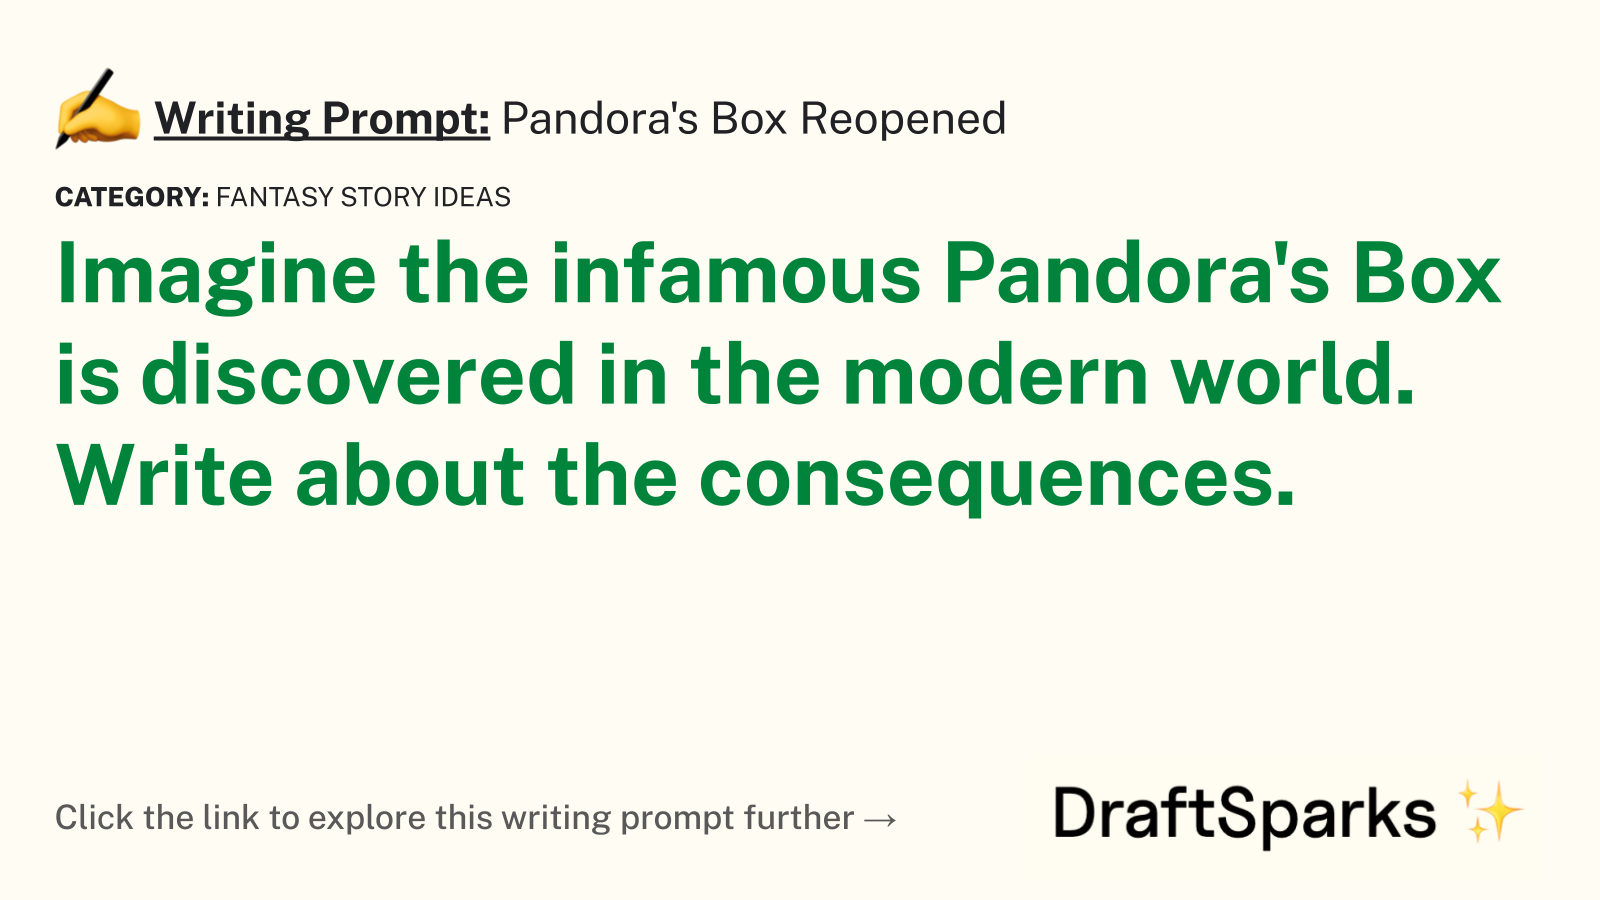 Pandora’s Box Reopened